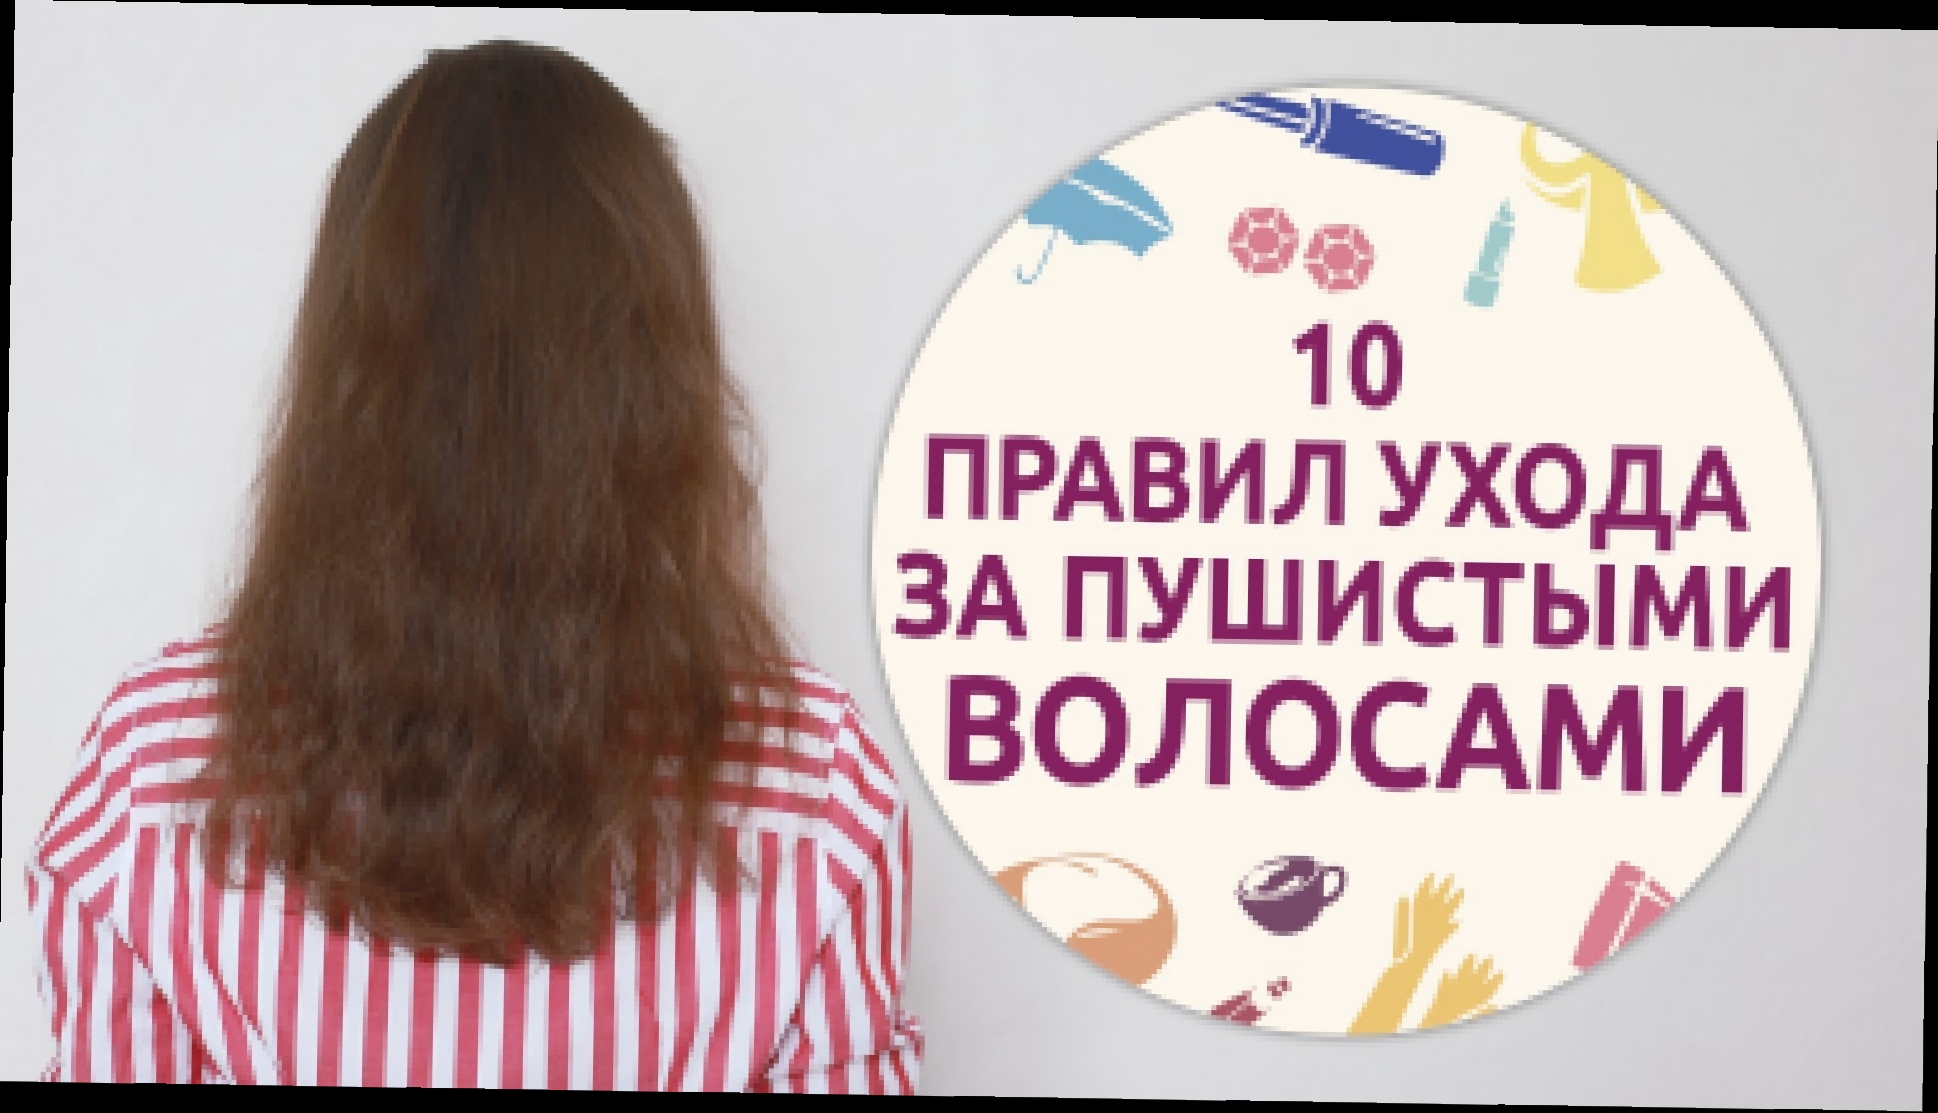 10 правил ухода за пушистыми волосами [Шпильки | Женский журнал] 